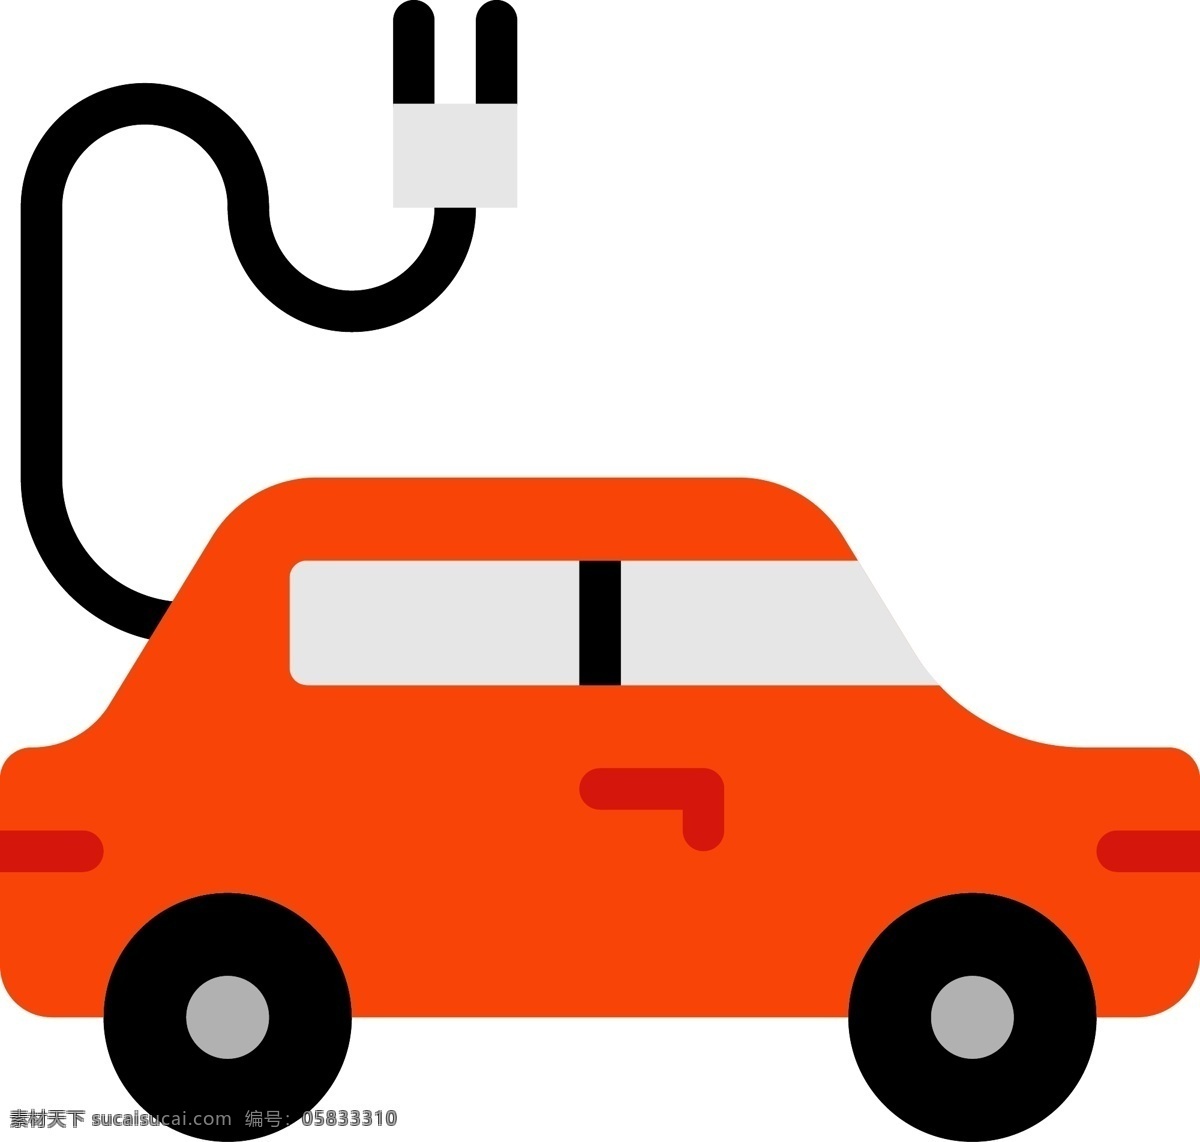 橙色 简约 扁平化 充电 汽车 新能源 免 扣 充电汽车 新能源汽车 环保 交通工具 节能 交通 插电式汽车